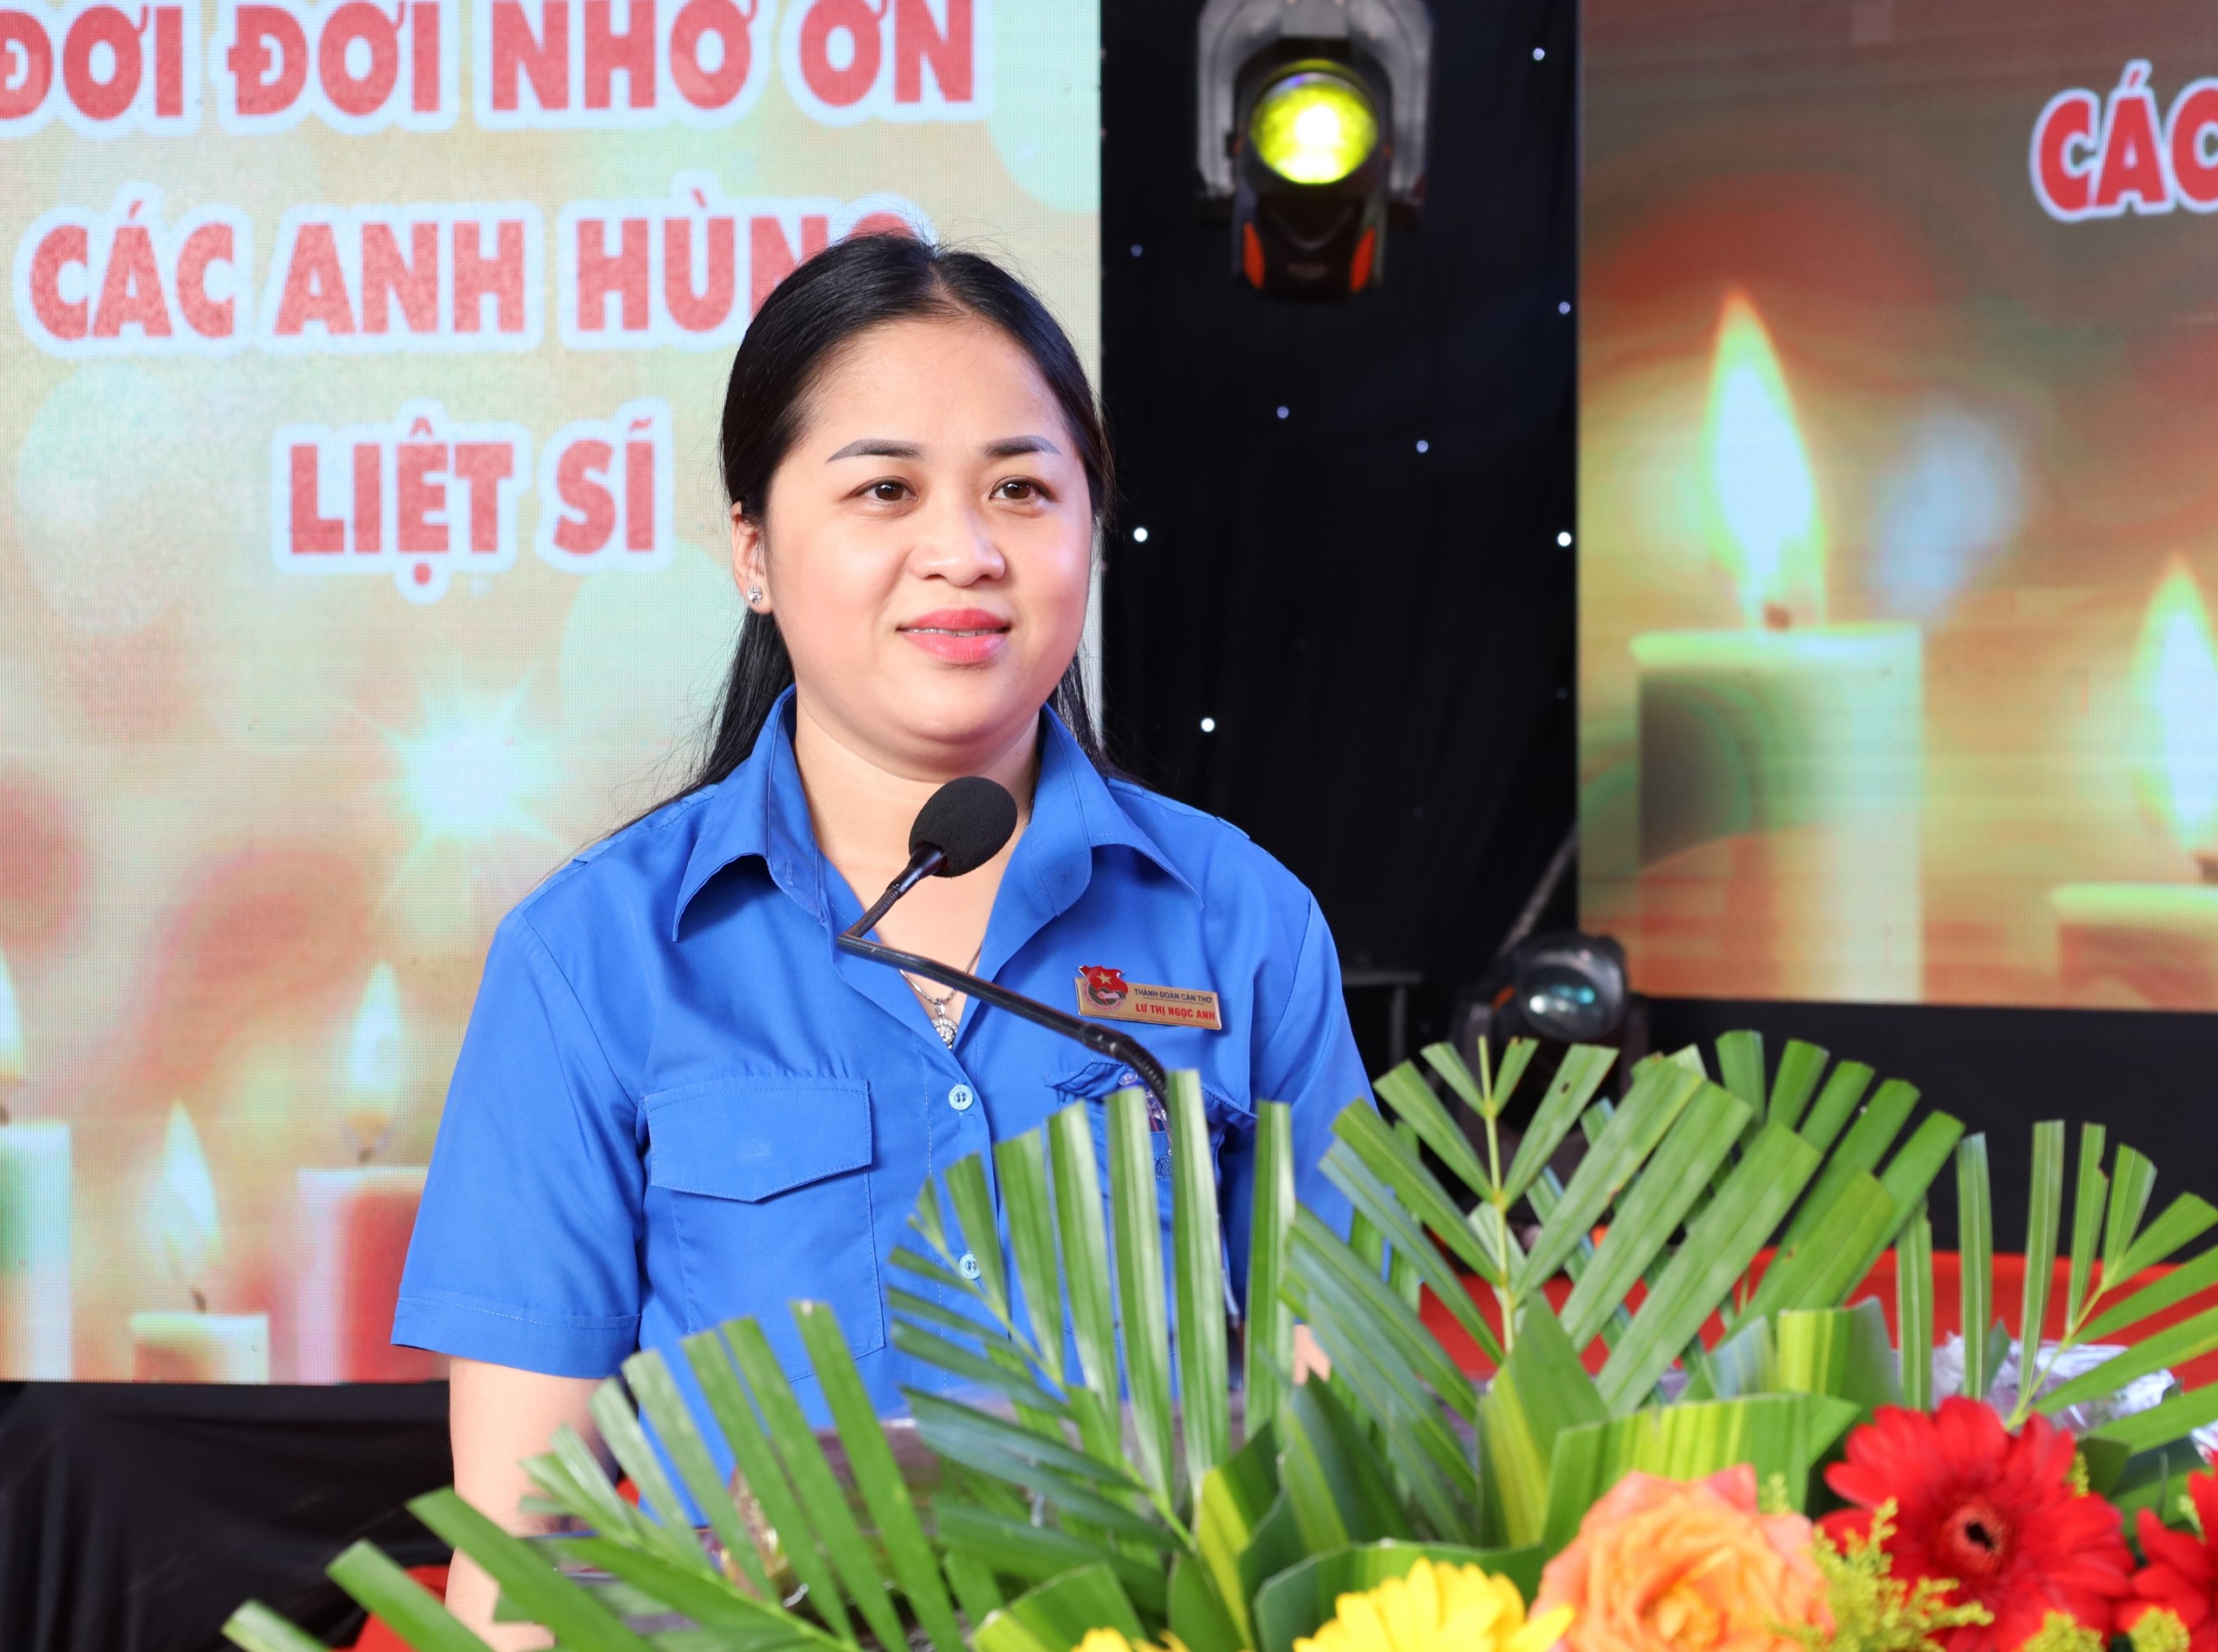 Chị Lư Thị Ngọc Anh - Bí thư Thành đoàn Cần Thơ đại diện tuổi trẻ thành phố phát biểu báo công và tri ân các anh hùng liệt sĩ.